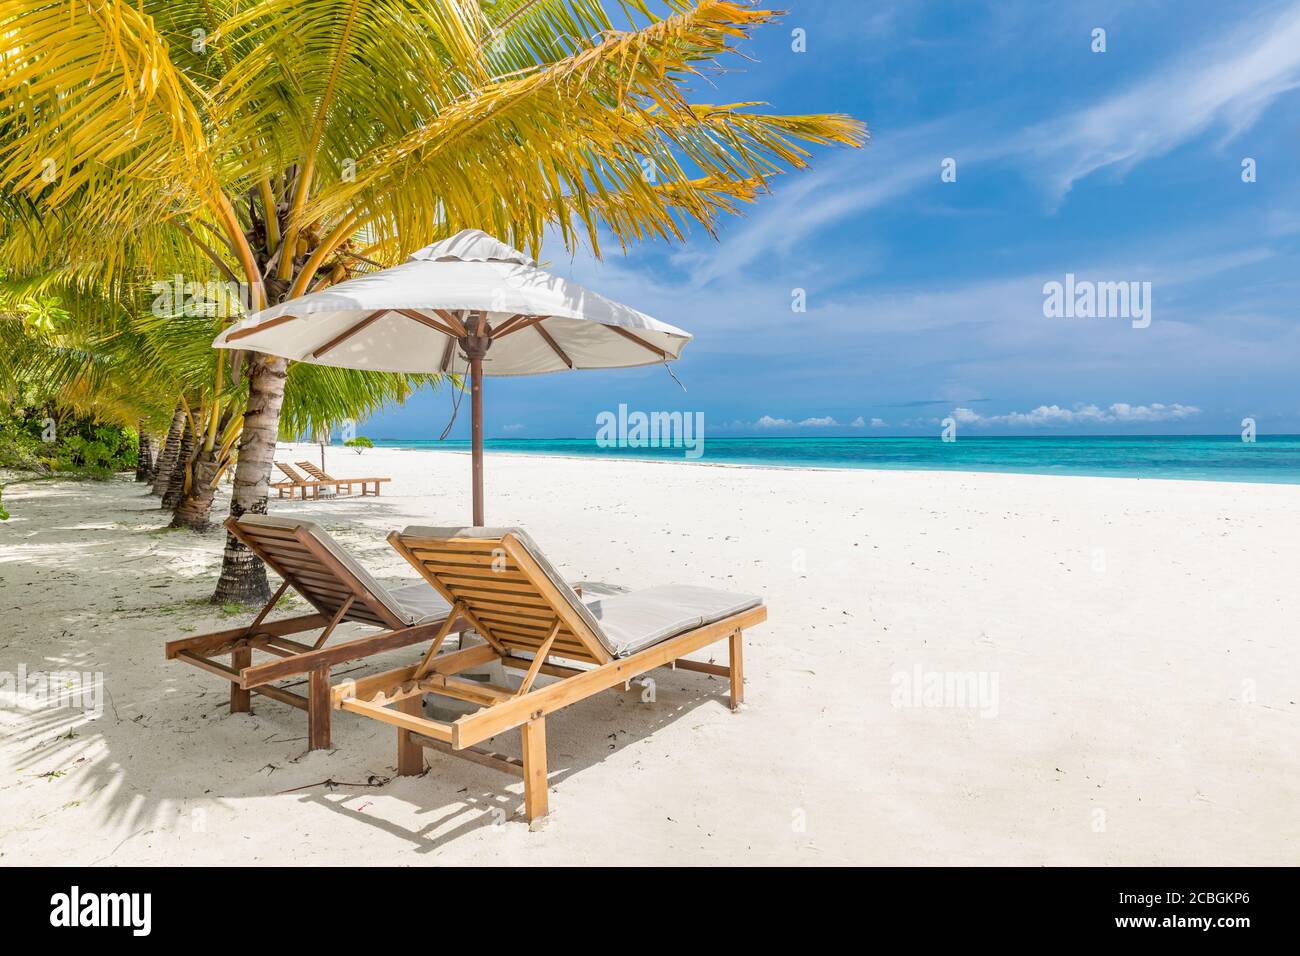 Belle plage tropicale. Sable blanc et chaises de coco Palms, tourisme de voyage parapluie, paysage de plage incroyable. Vacances ou vacances de luxe sur l'île Banque D'Images